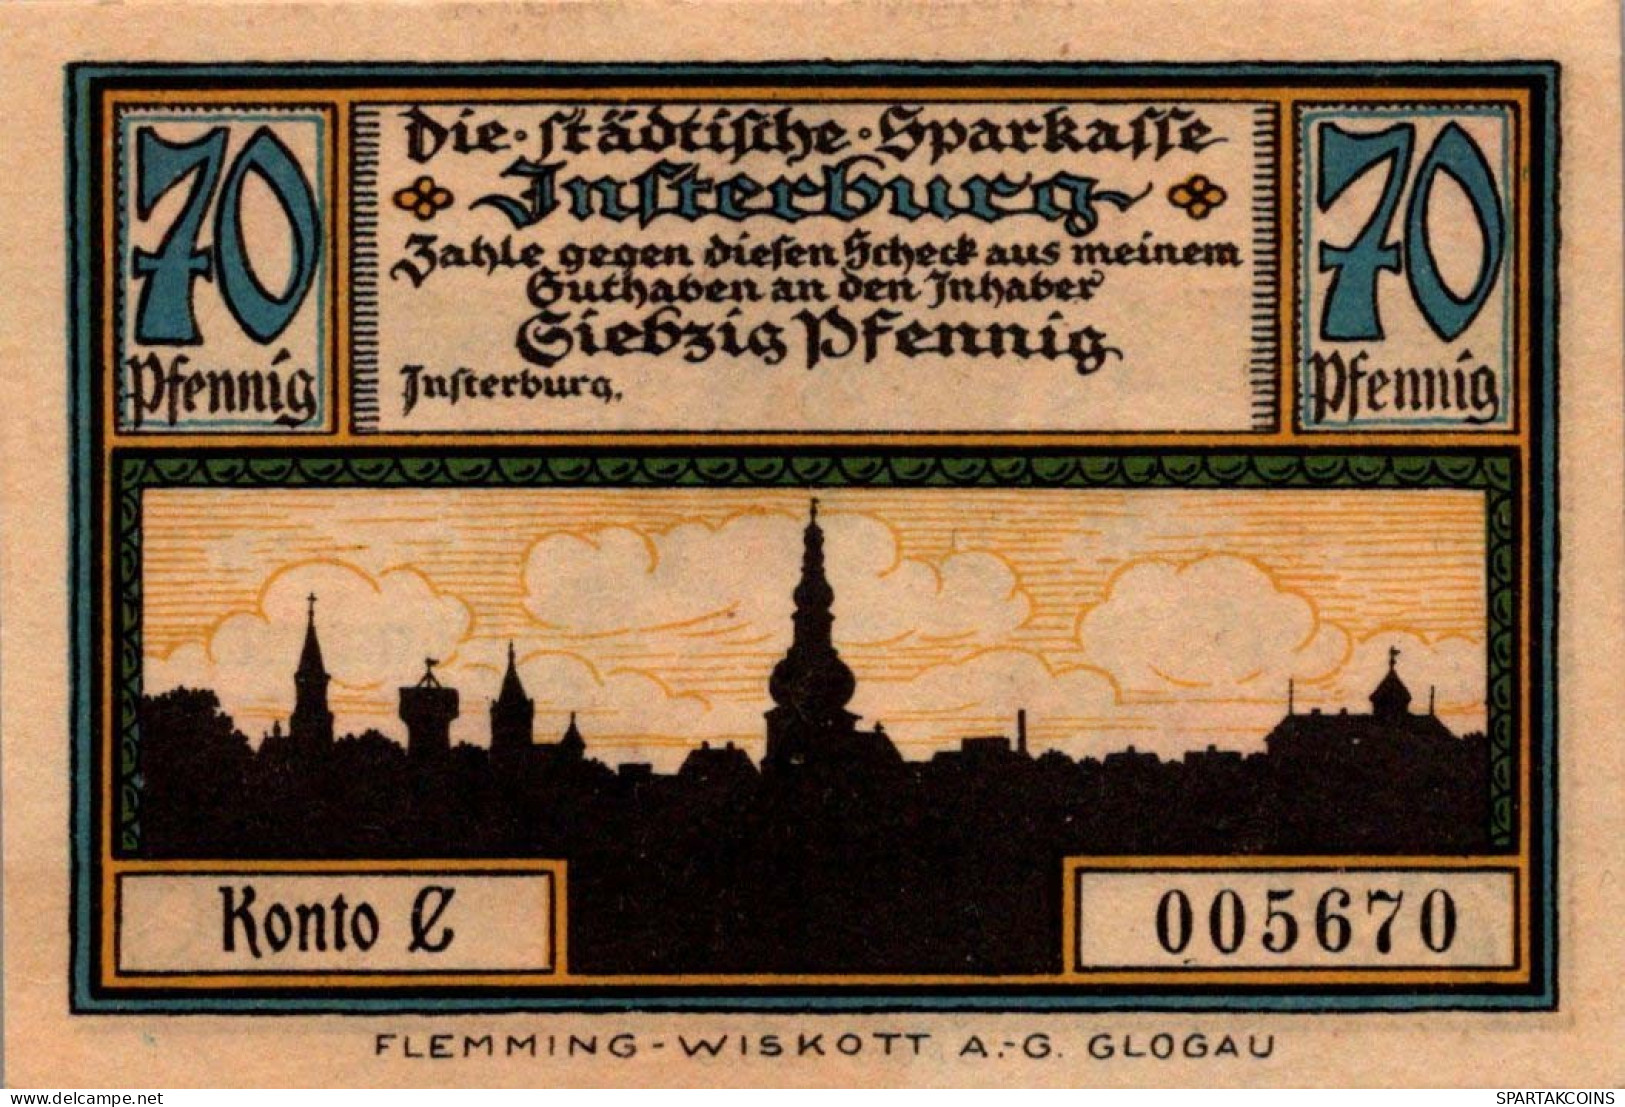 70 PFENNIG 1914-1924 Stadt INSTERBURG East PRUSSLAND UNC DEUTSCHLAND #PD112 - [11] Emisiones Locales